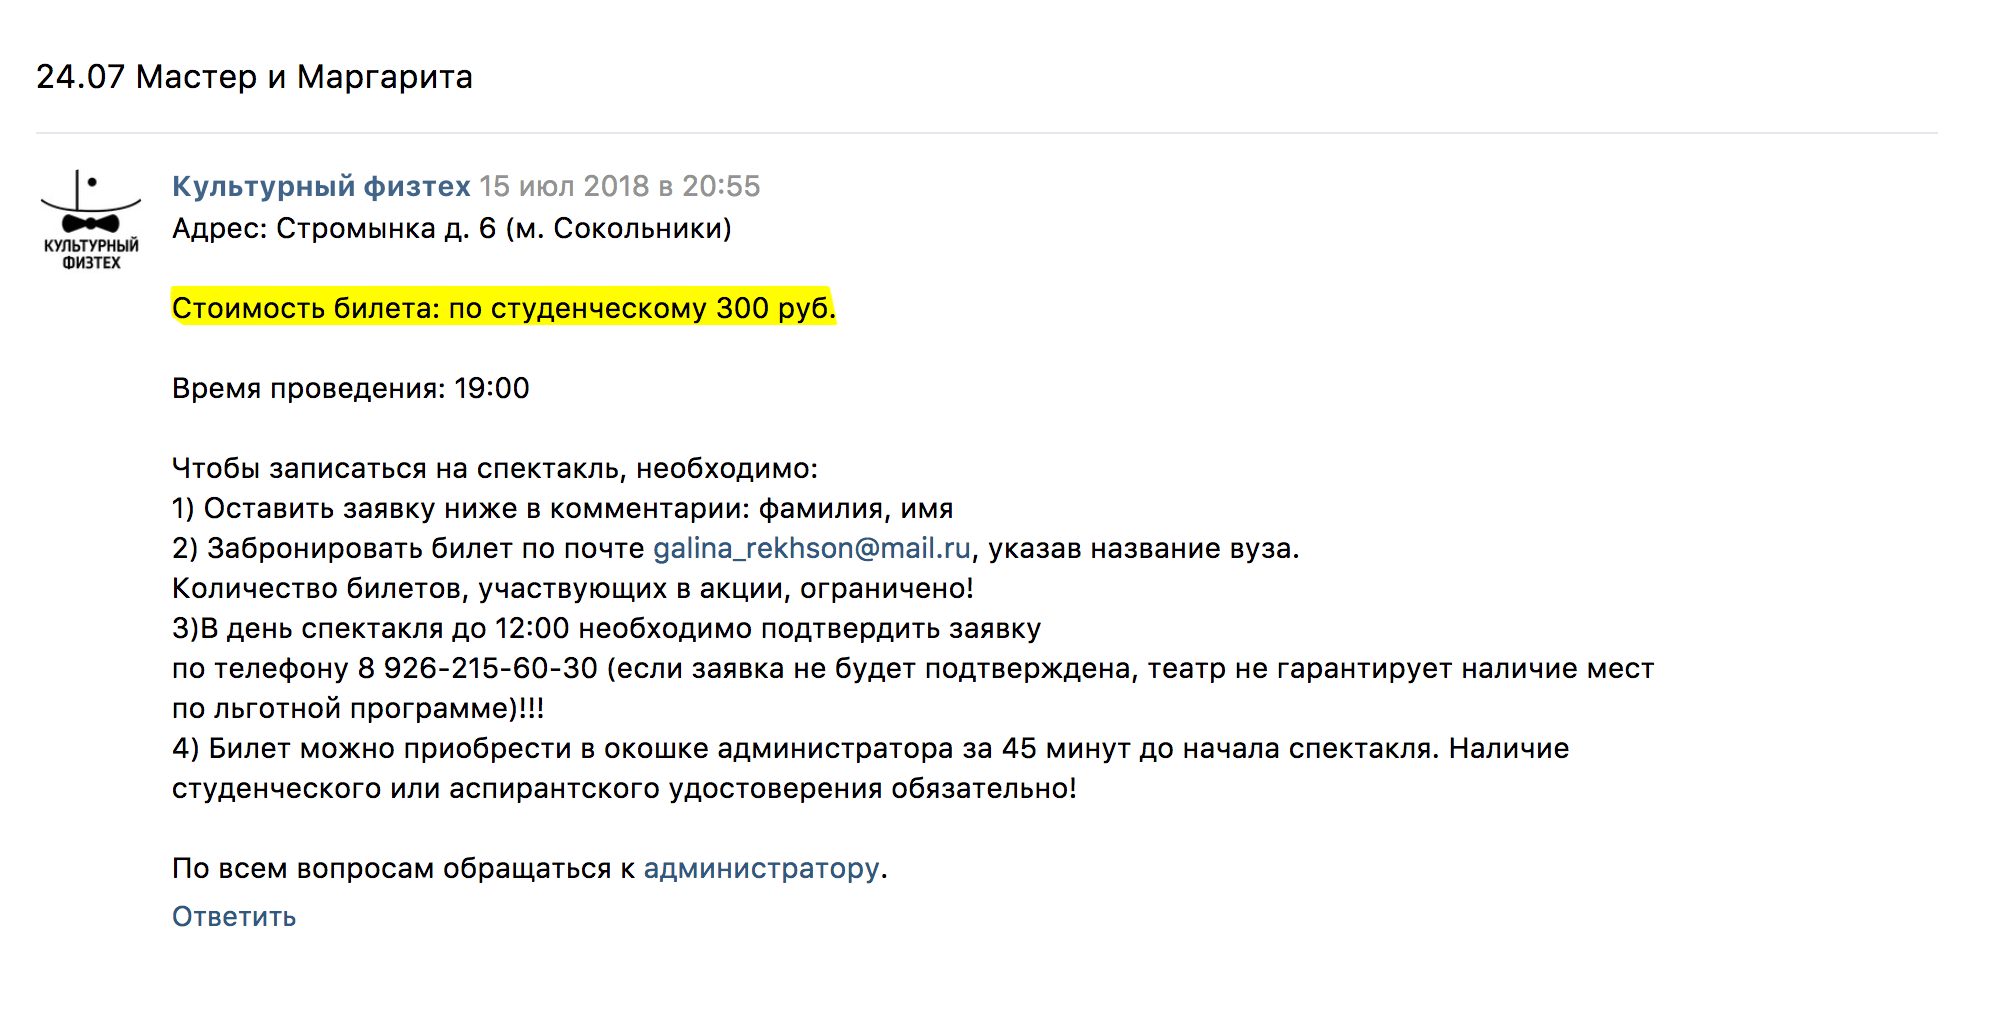 Объявления о скидках на билеты студенты публикуют во Вконтакте в группе «Культурный физтех». Обычный билет в партер стоит 2000 ₽, студентам он достается за 300 ₽